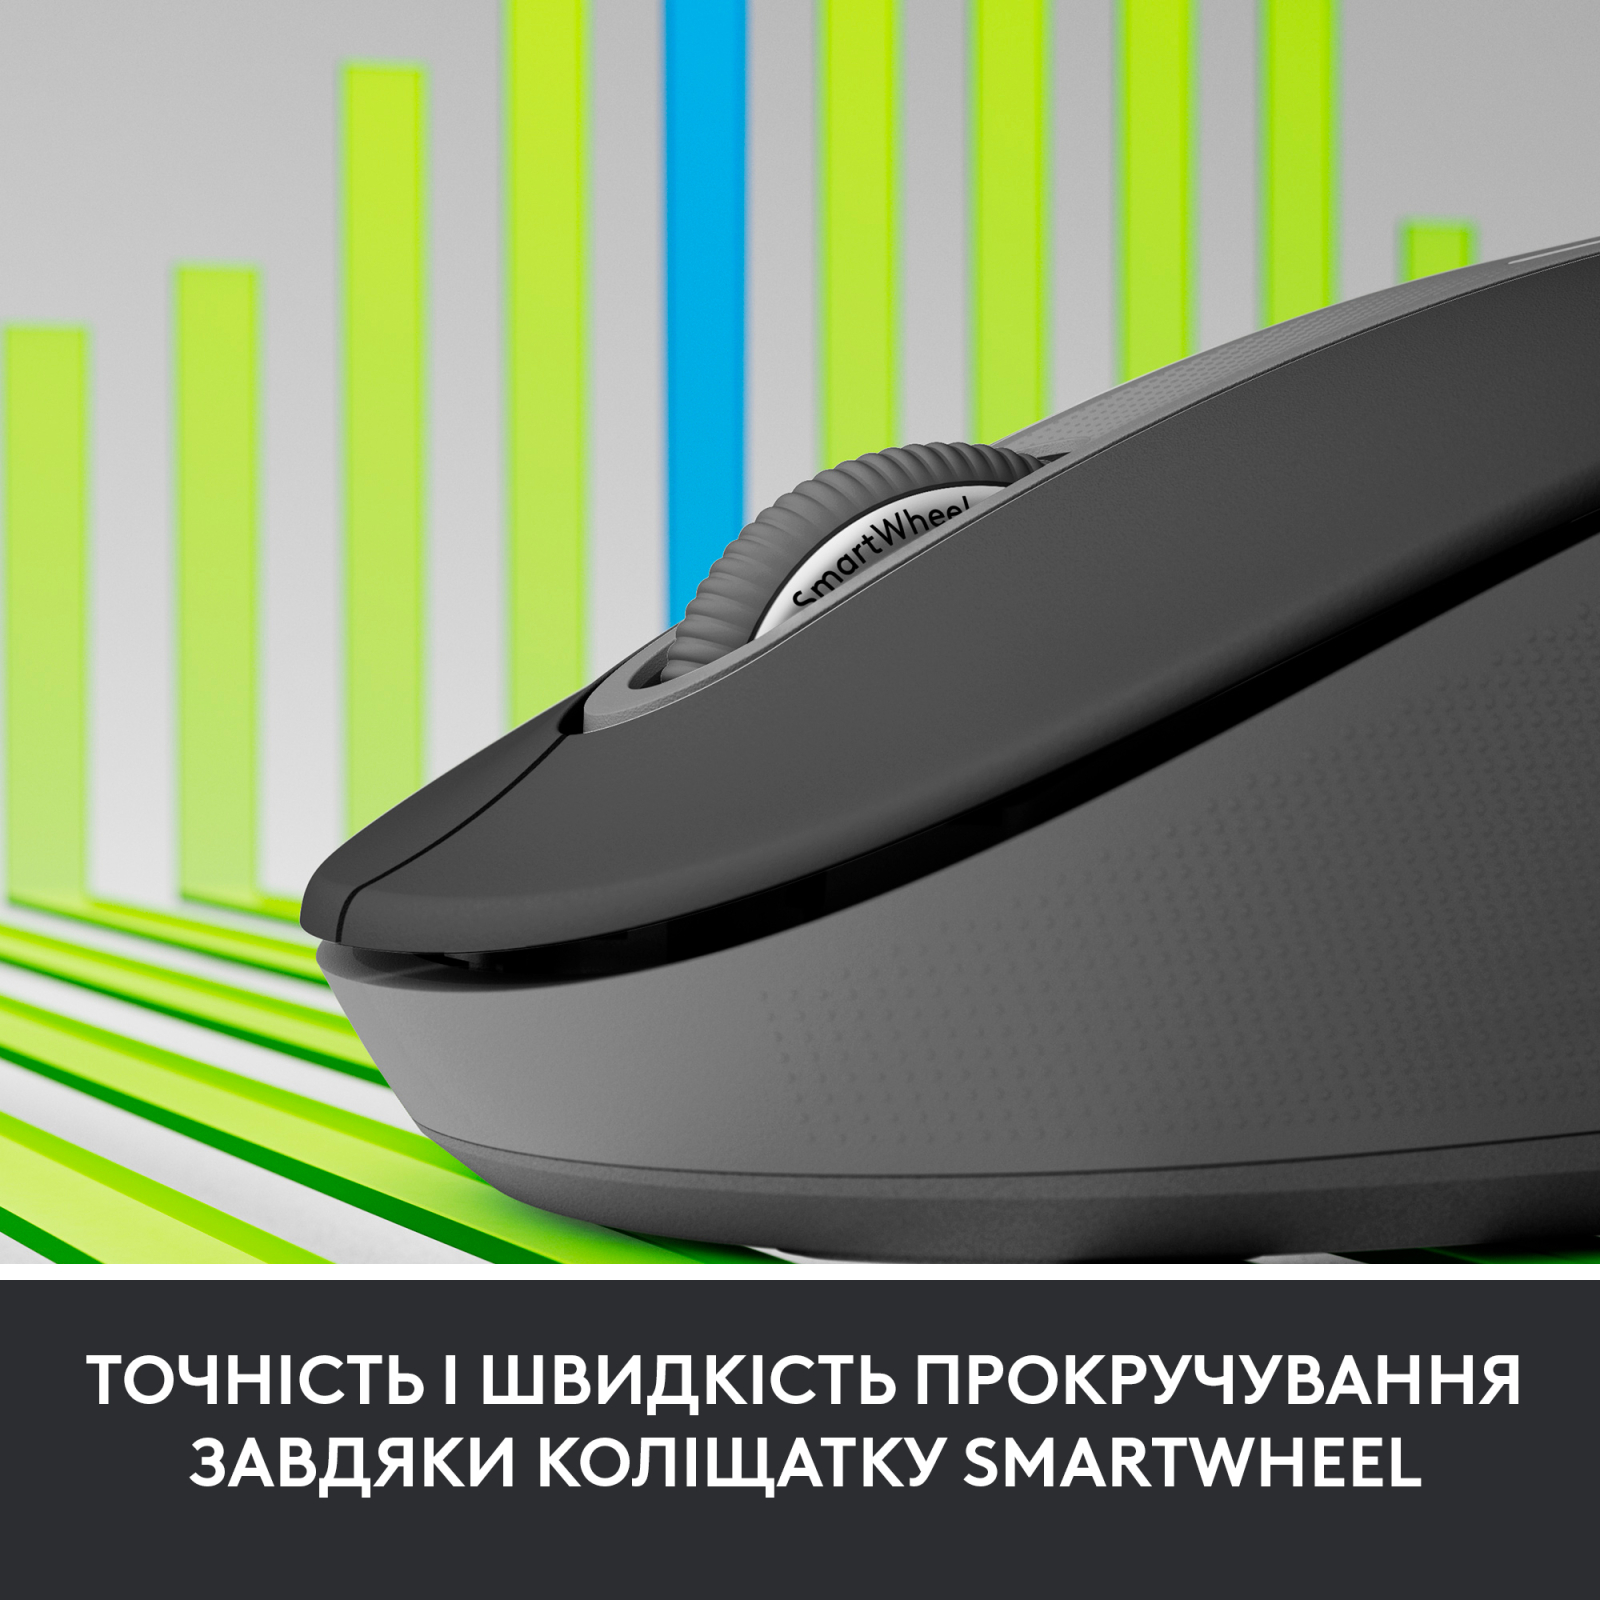 Мышка Logitech Signature M650 Wireless for Business Off-White (910-006275) изображение 5